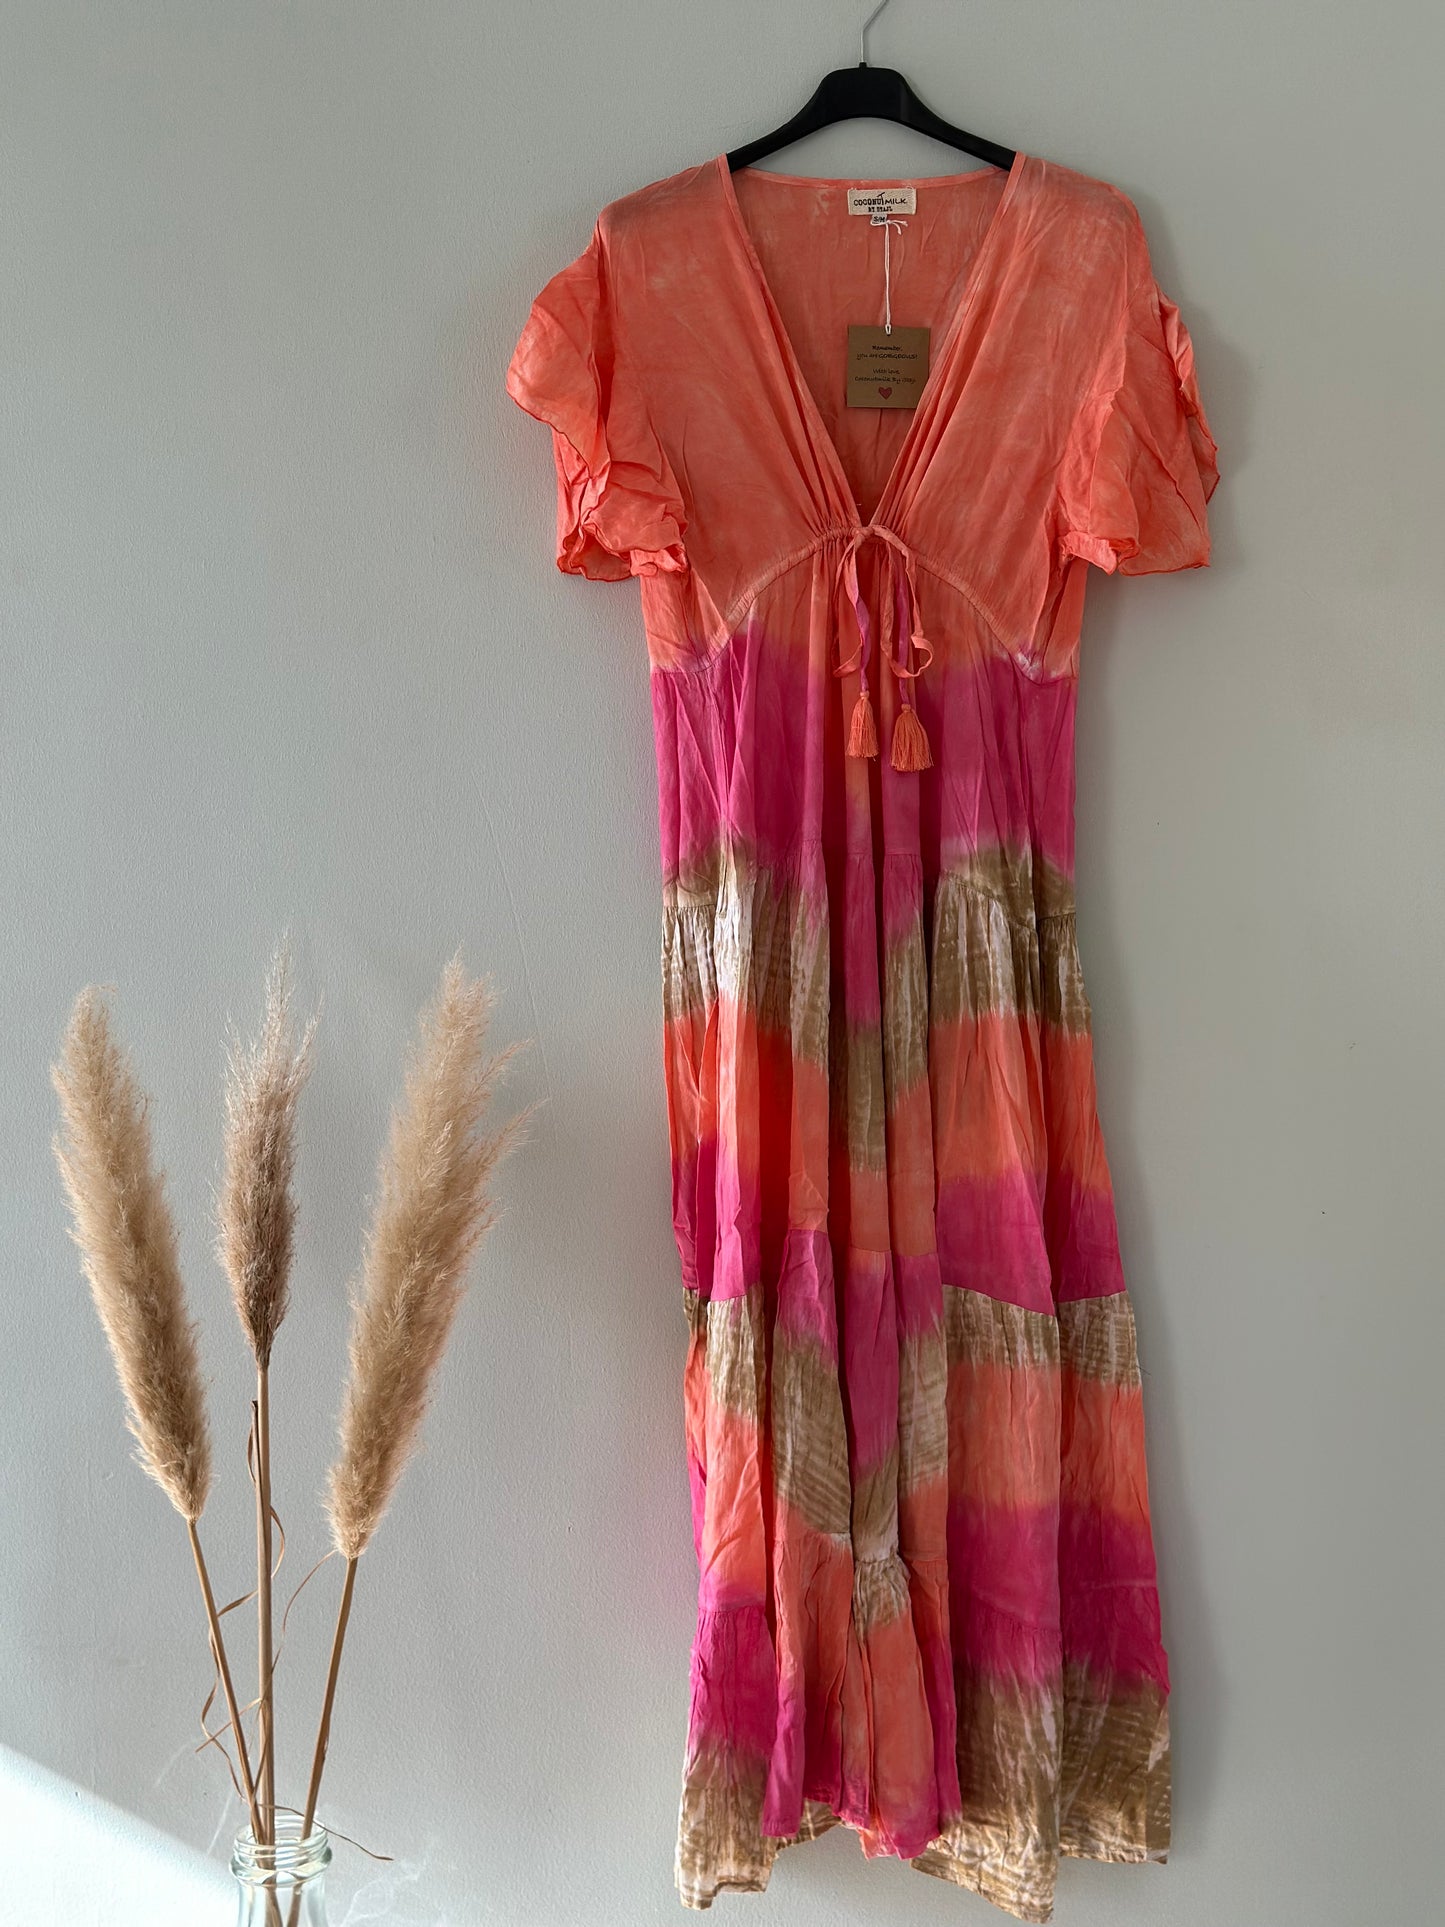 Coconut Milk By Stajl, Bao Bao Dress - Tie Dye Pink Layers